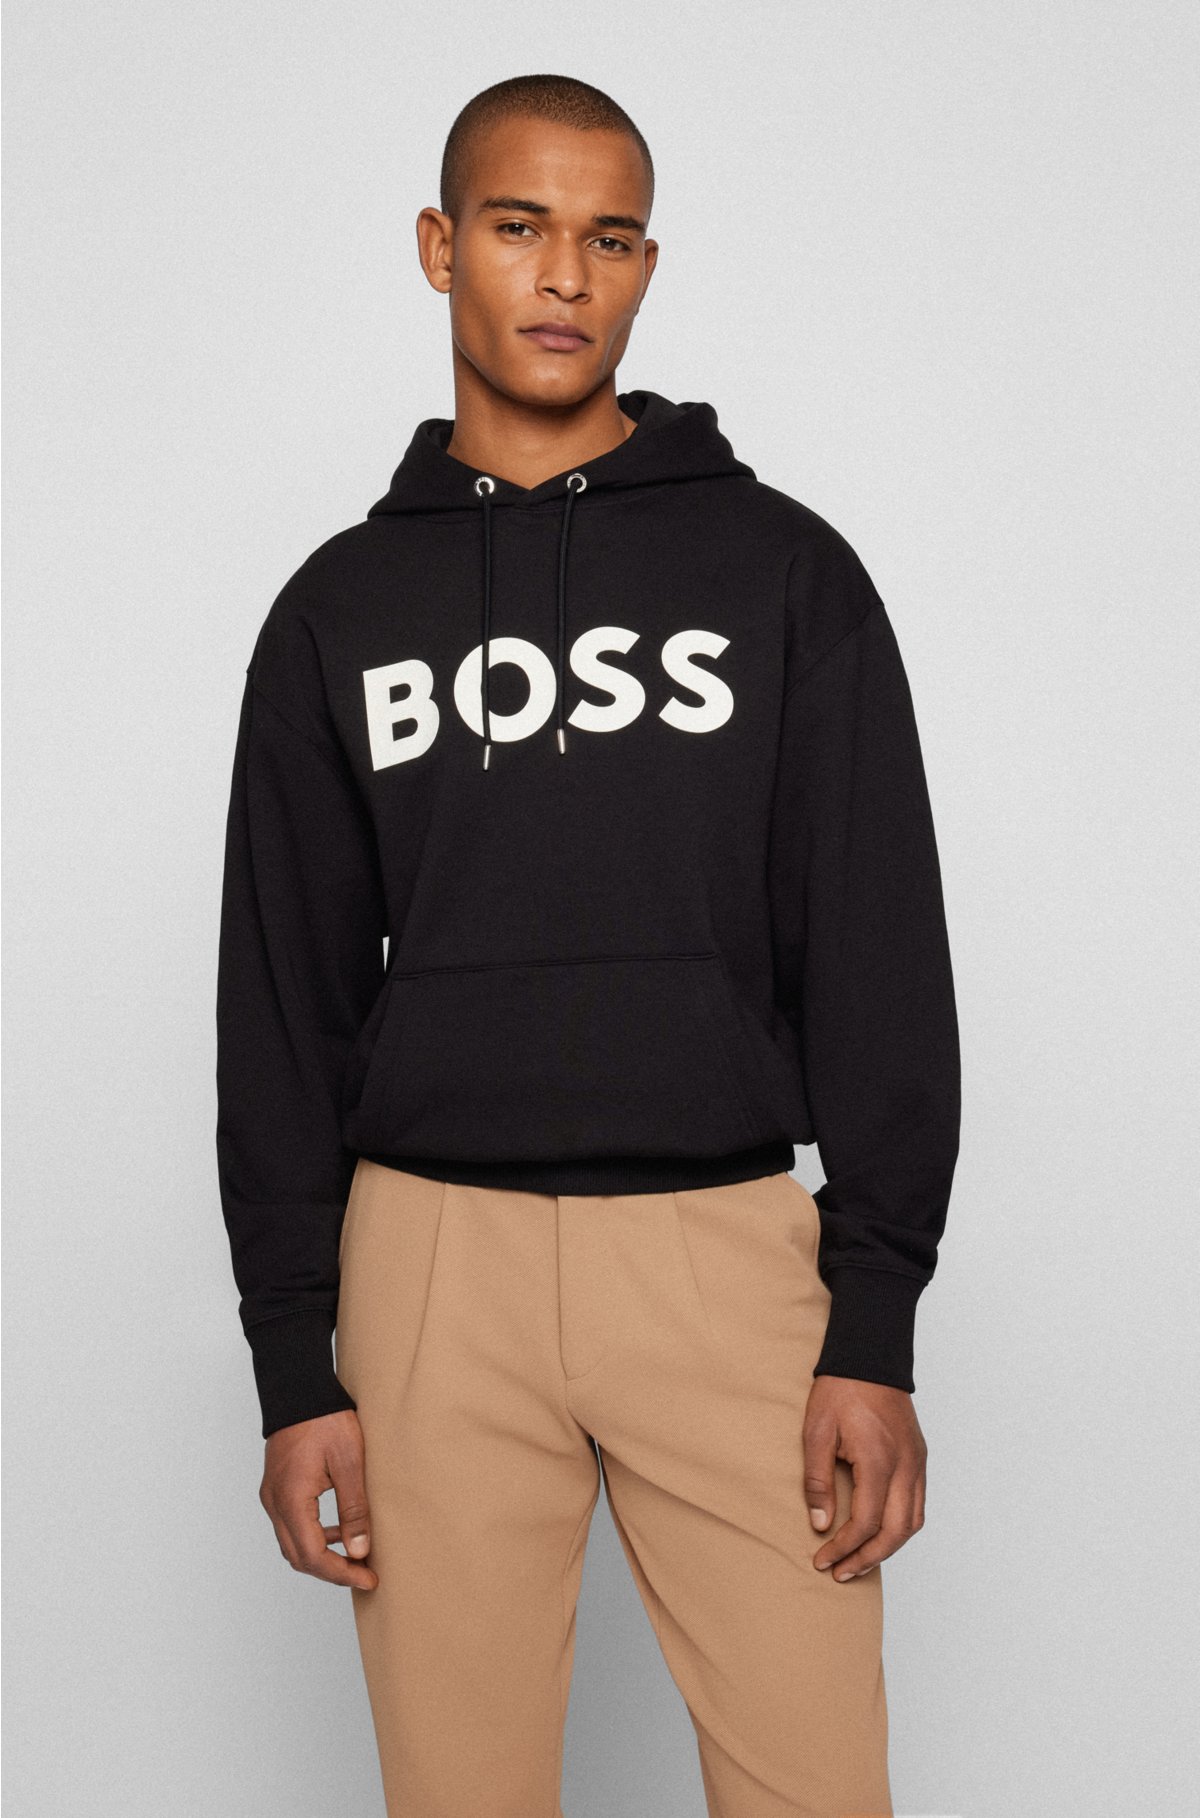 Geleerde het formulier hamer BOSS - Organic-cotton hooded sweatshirt with contrast logo